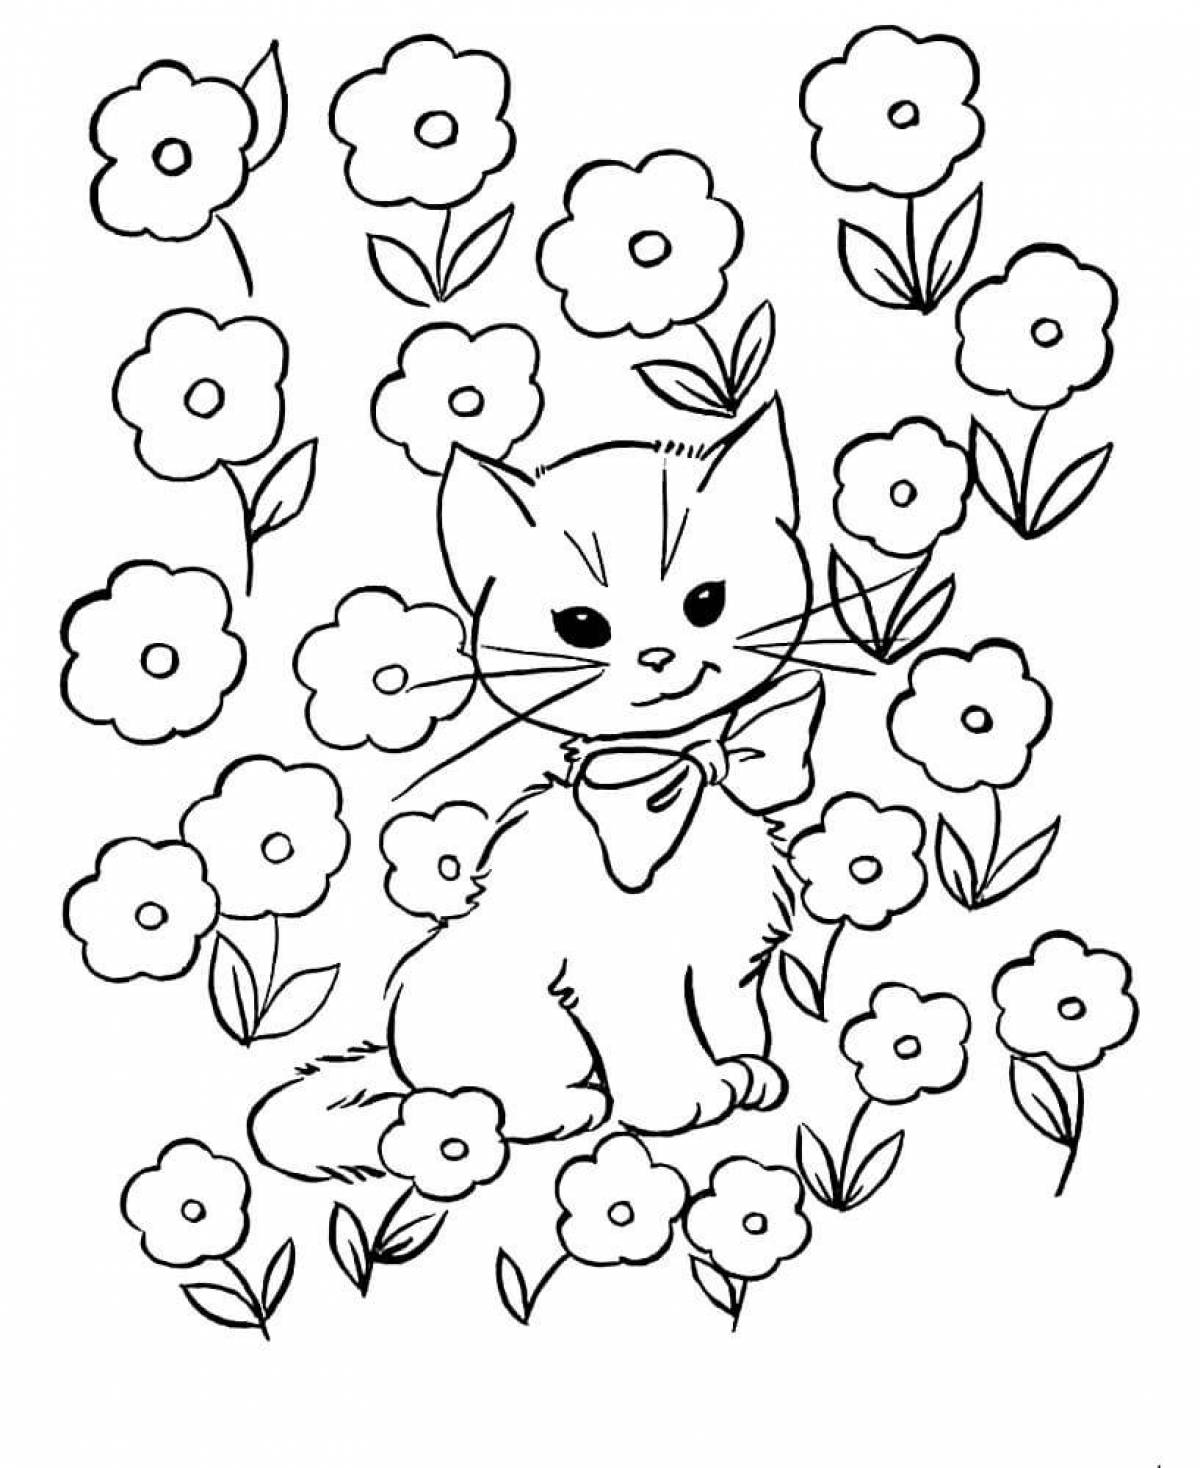 Раскраска кошки для детей 4 5 лет. Кошки. Раскраска. Раскраска цветочек. Кошка раскраска для детей. Котик раскраска для детей.